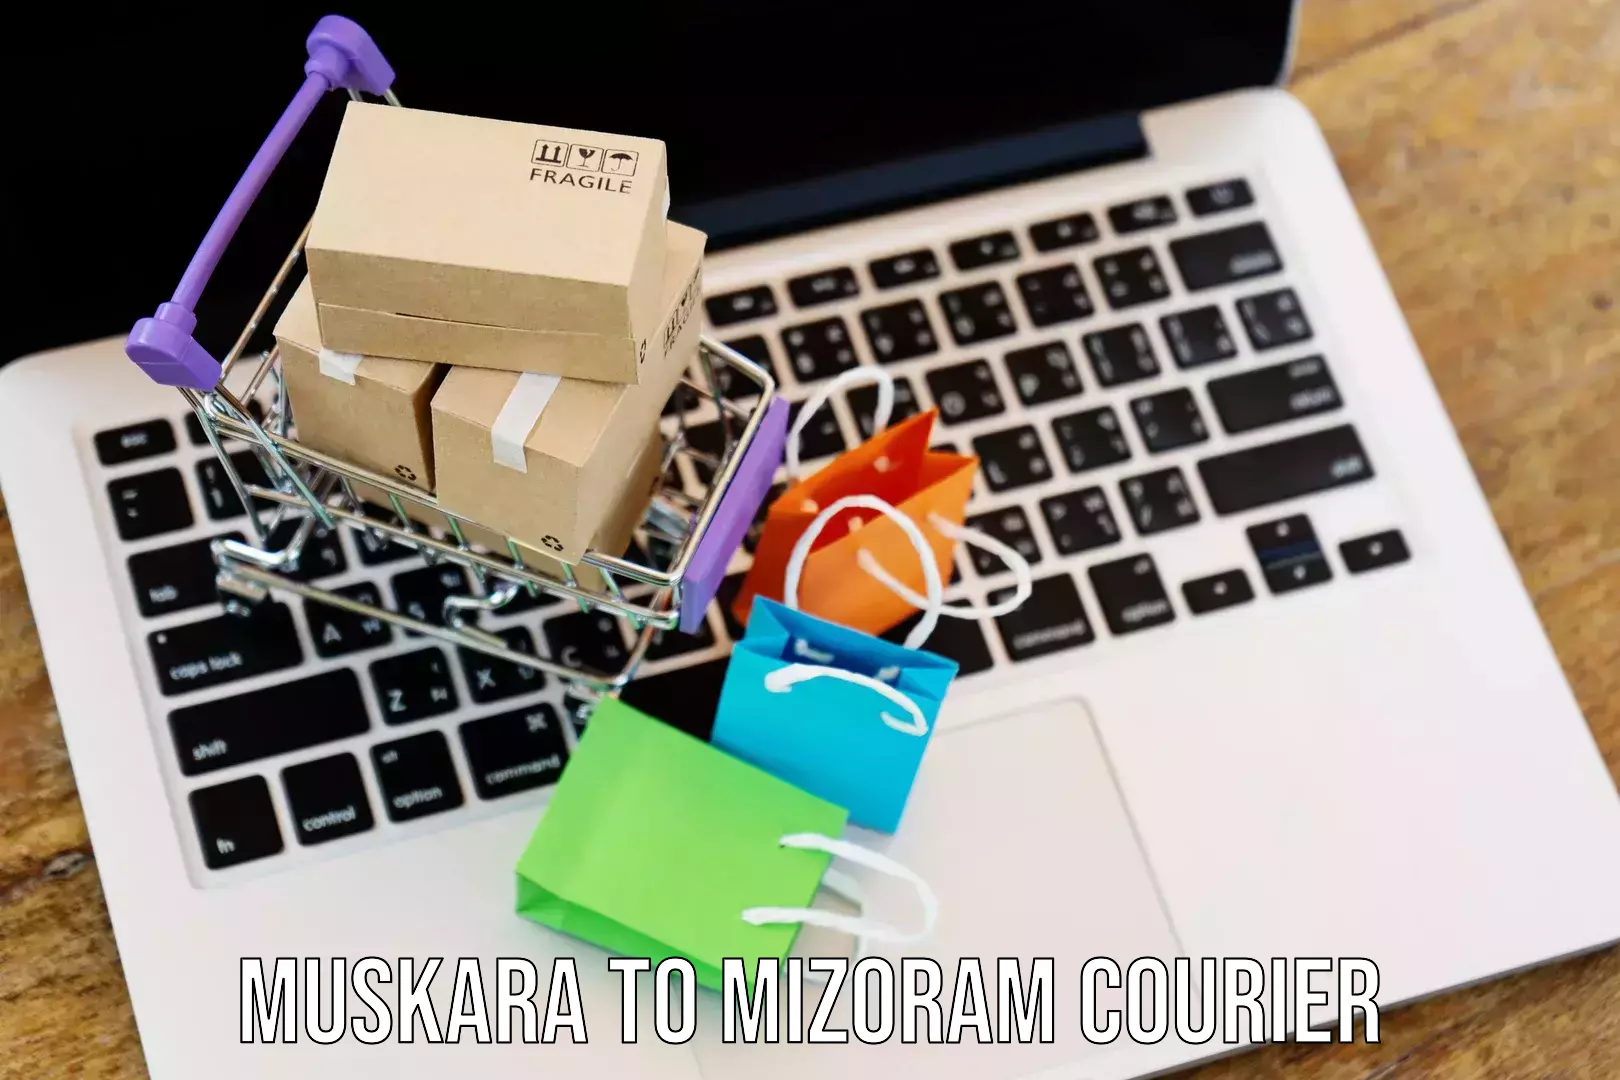 Multi-modal transport Muskara to Mizoram